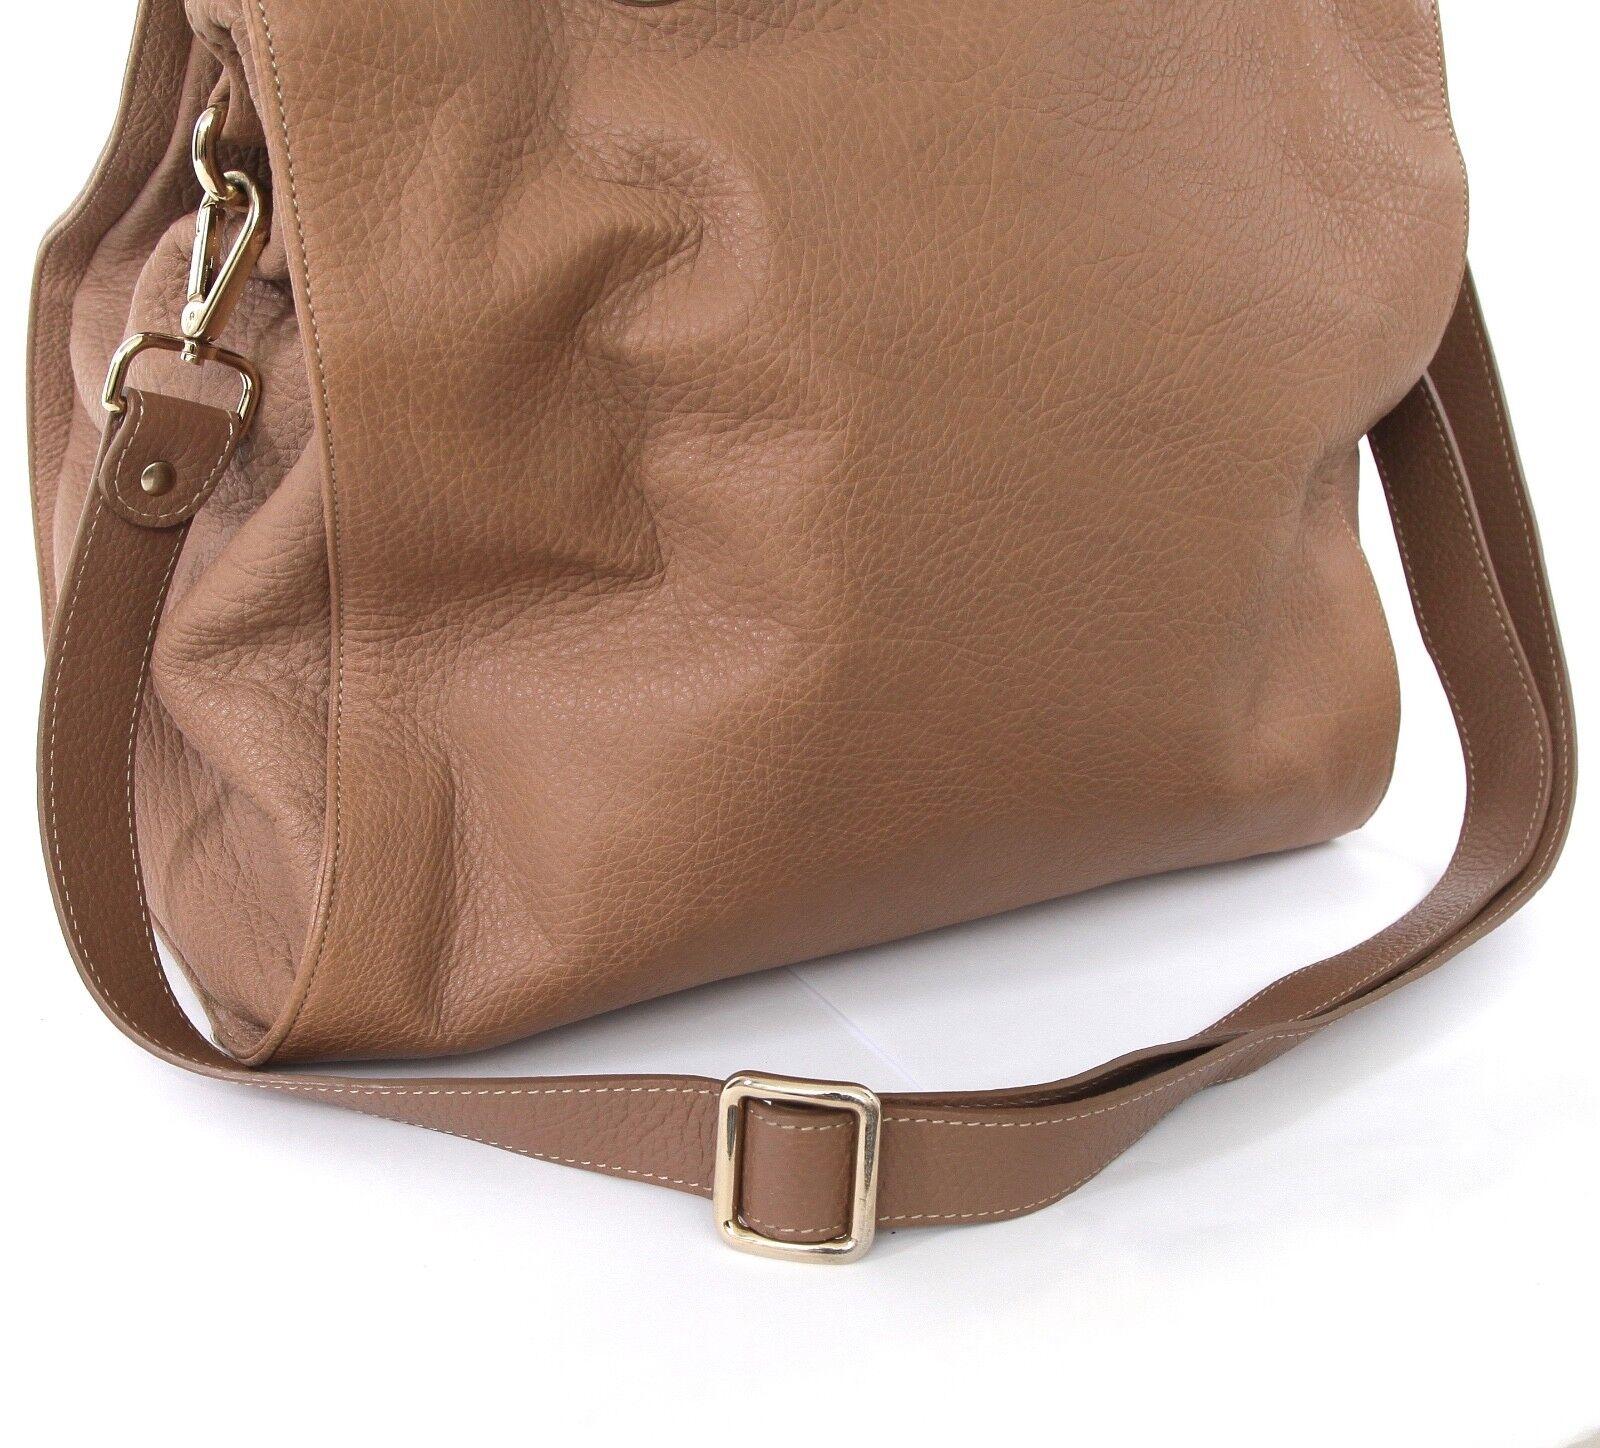 Brown JIMMY CHOO Bag Tan Leather Large ROSABEL Satchel Tote Shoulder Strap Gold HW For Sale